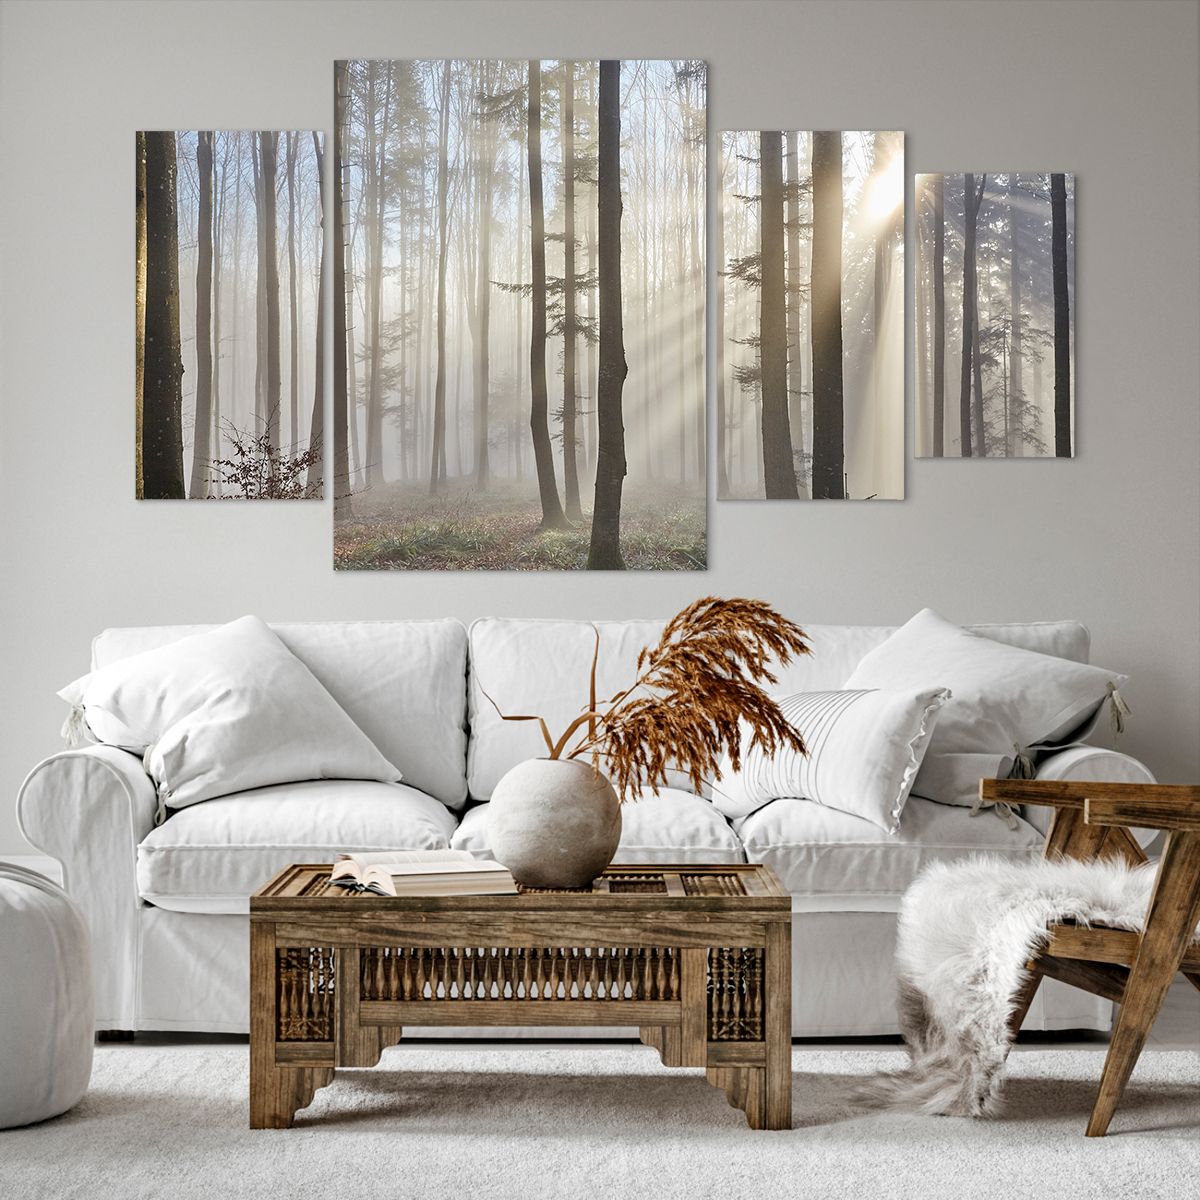 Bild auf Leinwand Landschaft, Bild auf Leinwand Wald, Bild auf Leinwand Nebel, Bild auf Leinwand Bäume, Bild auf Leinwand Natur